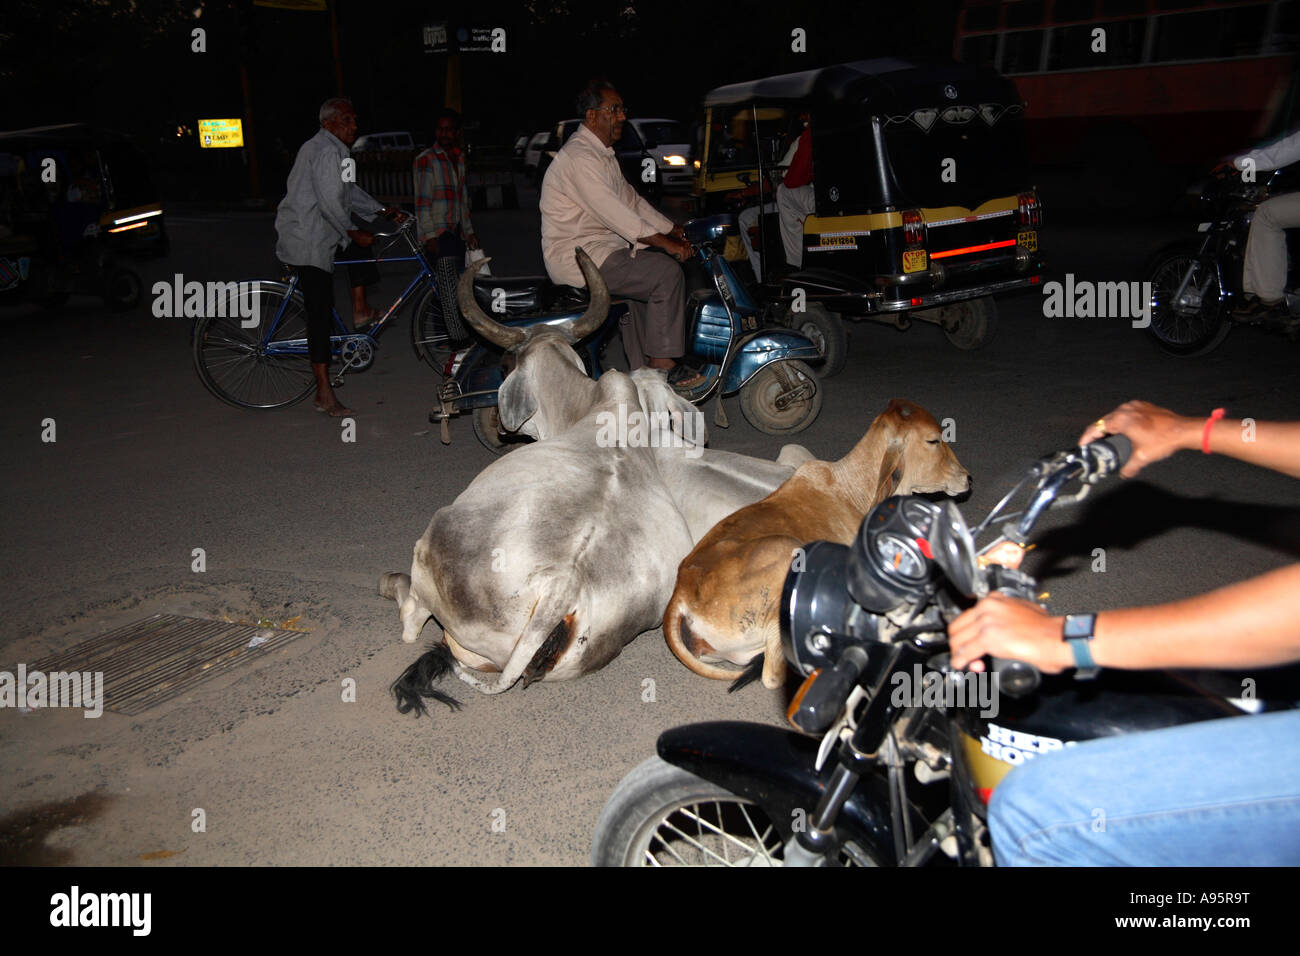 Les vaches indiennes sacrées qui se trouvent au milieu de la circulation tandis que les véhicules se promènent autour d'elles, Vadodara, Gujarat, Inde Banque D'Images